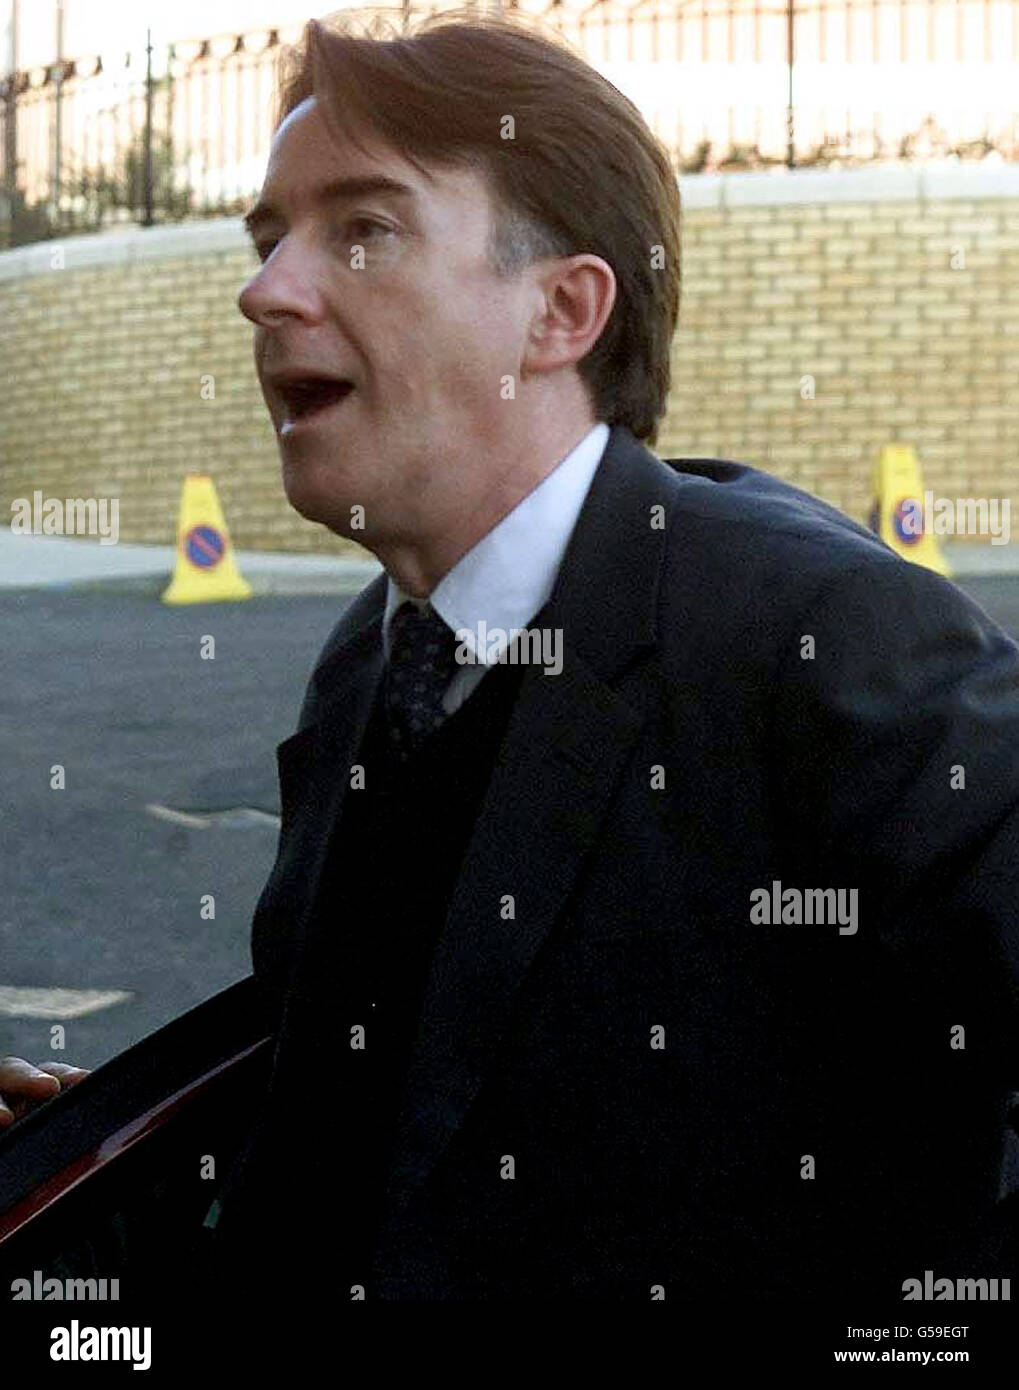 Der ehemalige nordirische Minister Peter Mandelson trifft die jungen Labour-Mitarbeiter in North Seilds, Tyne und Wear ein. Herr Mandelson bestand darauf, dass er bei den bevorstehenden Parlamentswahlen als Abgeordneter von Hartlepool kandidieren wird, er glaubt, dass er die Unterstützung seiner Wähler hat * ... und genießt den bevorstehenden Kampf mit Kandidaten wie dem ehemaligen Gewerkschaftsführer der Bergleute, Arthur Scargill. Im BBC Radio Cleveland sagte Mandelson dem Moderator Alan Wright, wie er hoffe, dass die Medien ihn in Ruhe lassen und ihm erlauben würden, sich auf Themen zu konzentrieren, die für seine lokalen Wähler wichtig sind. Stockfoto